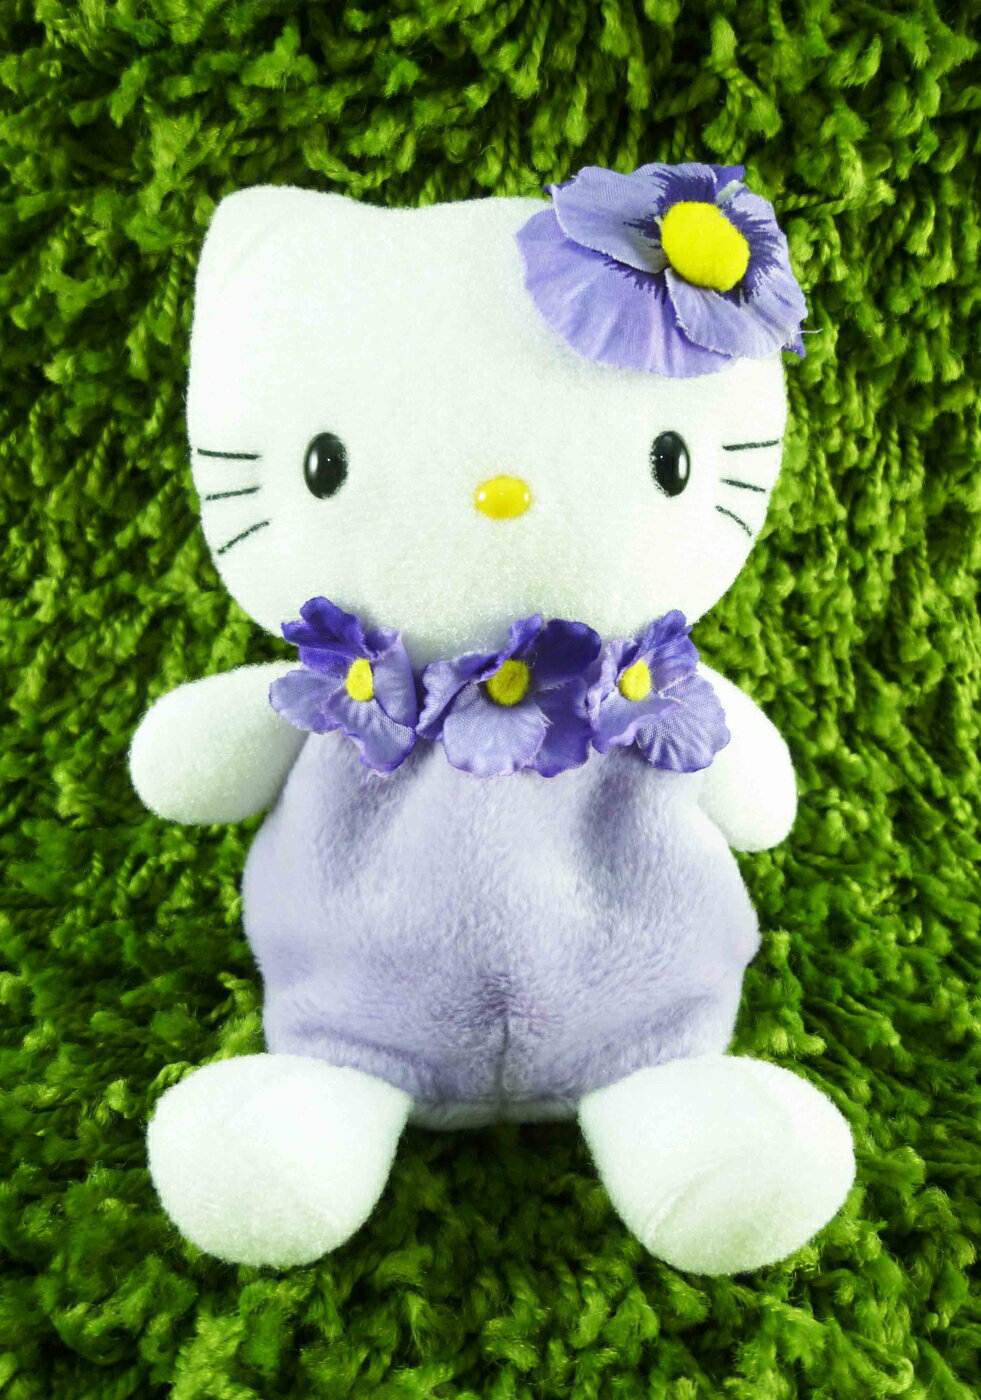 【震撼精品百貨】Hello Kitty 凱蒂貓 絨毛娃娃-紫花 震撼日式精品百貨